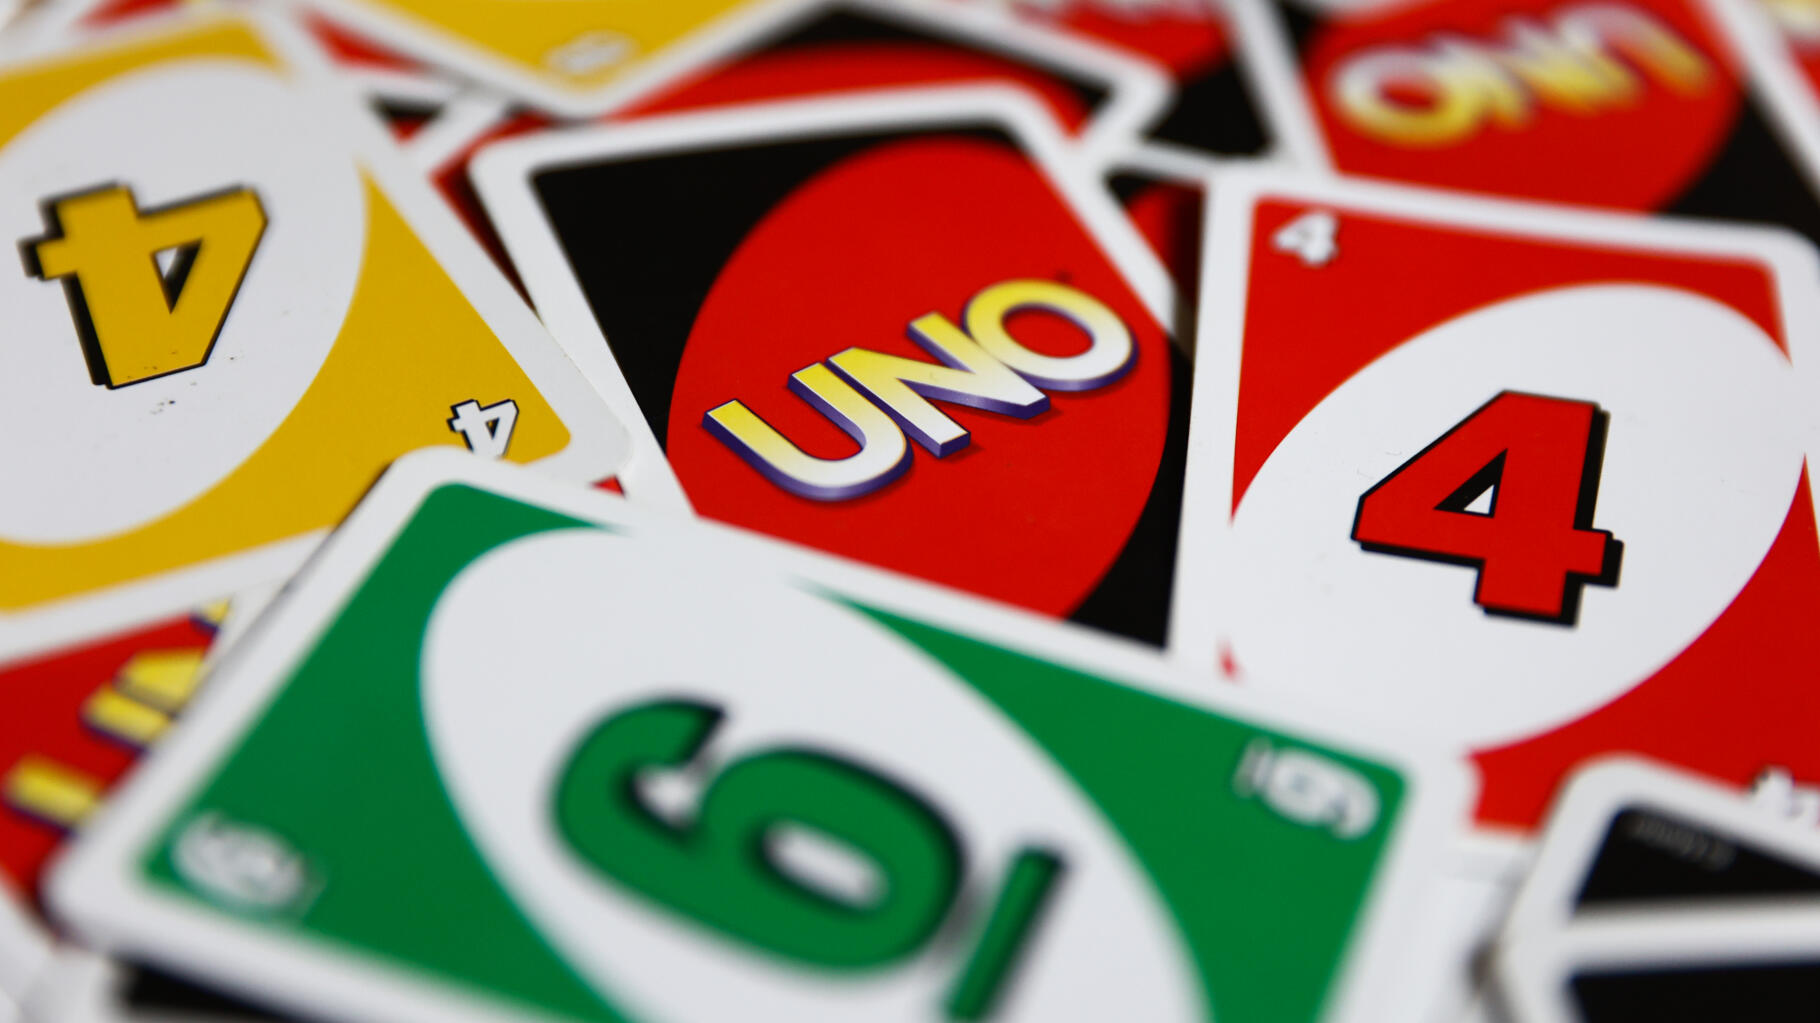 Le jeu UNO dévoile des nouvelles cartes et des nouvelles règles encore plus  impitoyables